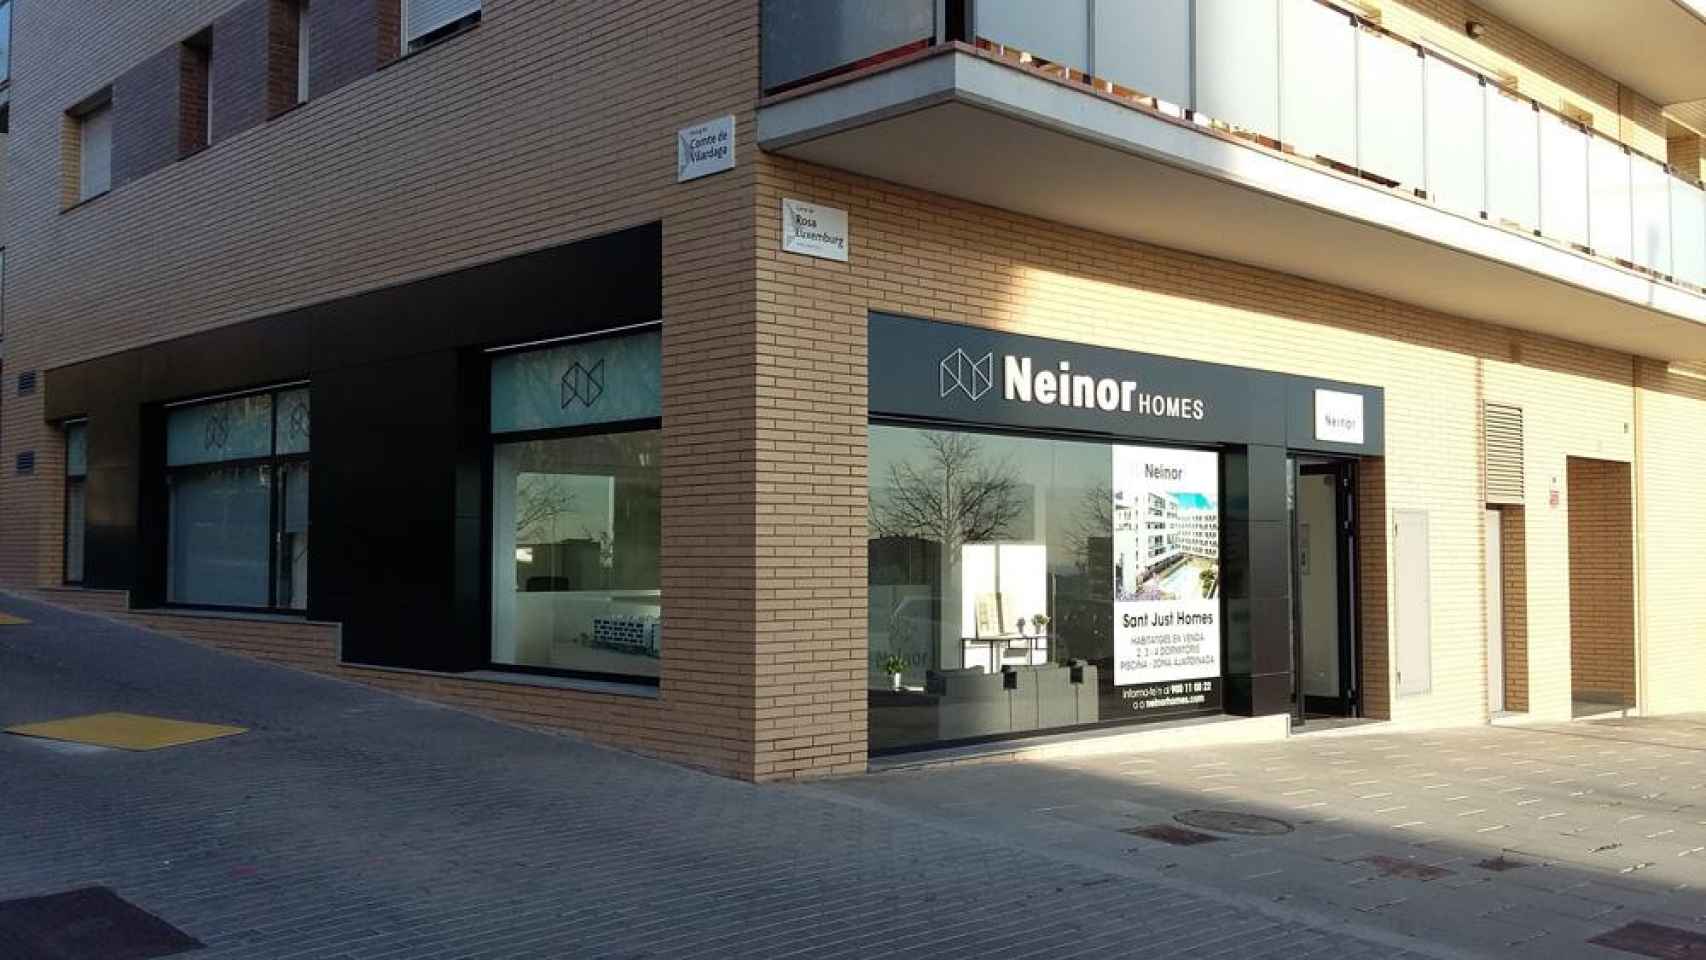 Oficina de ventas de la inmobiliaria Neinor Homes